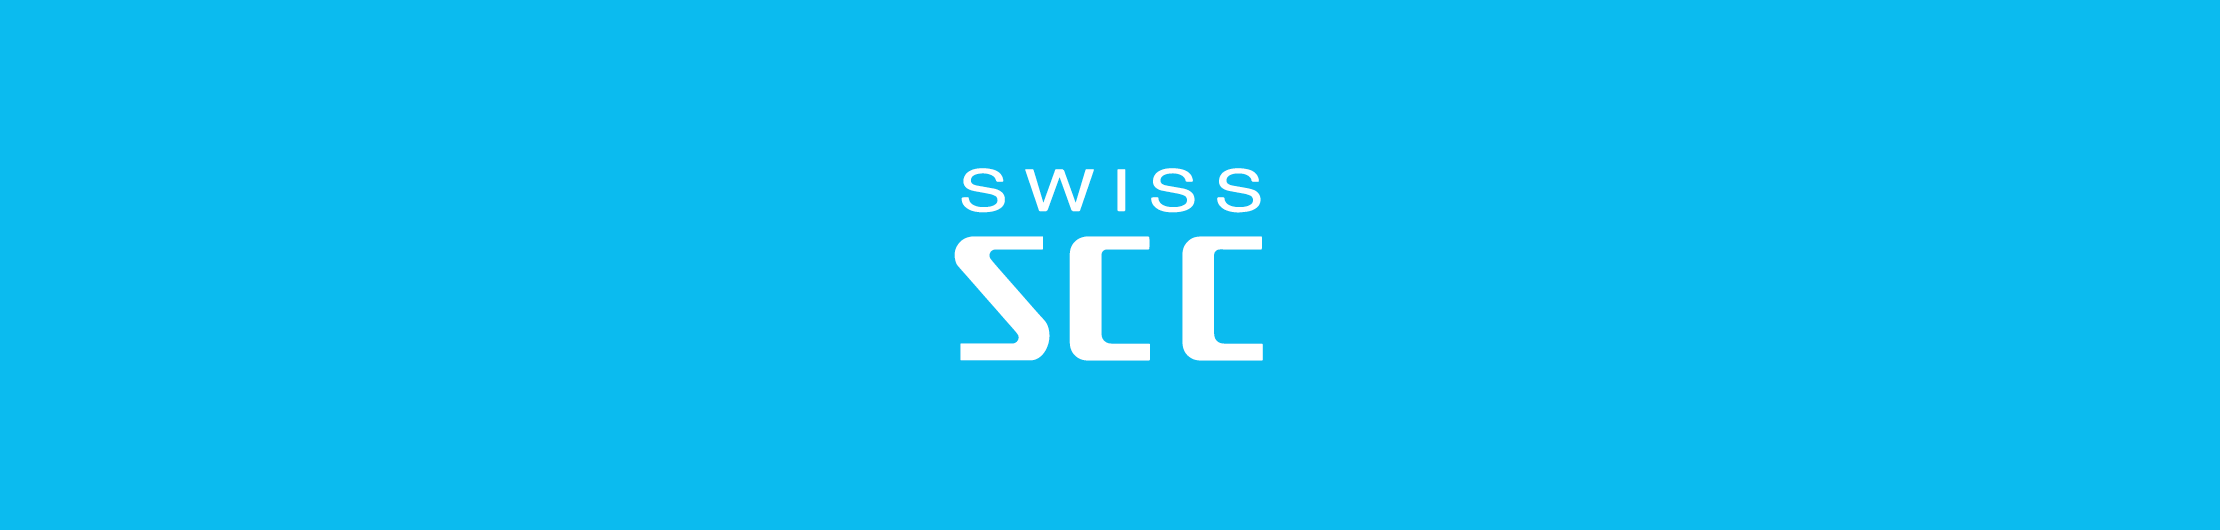 SWISS_SCC_Olten